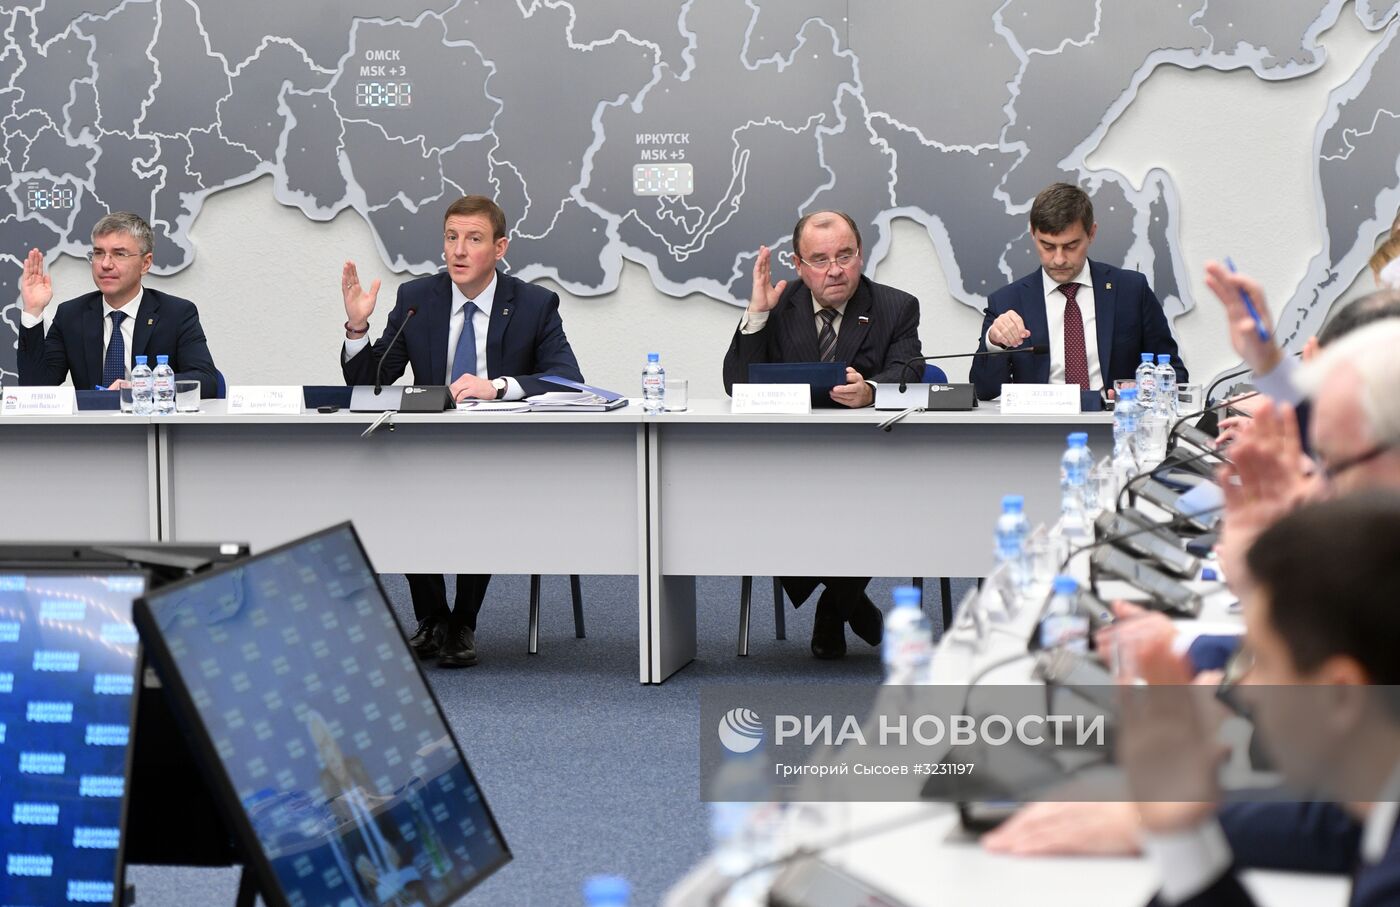 Заседание президиума генерального совета "Единой России"